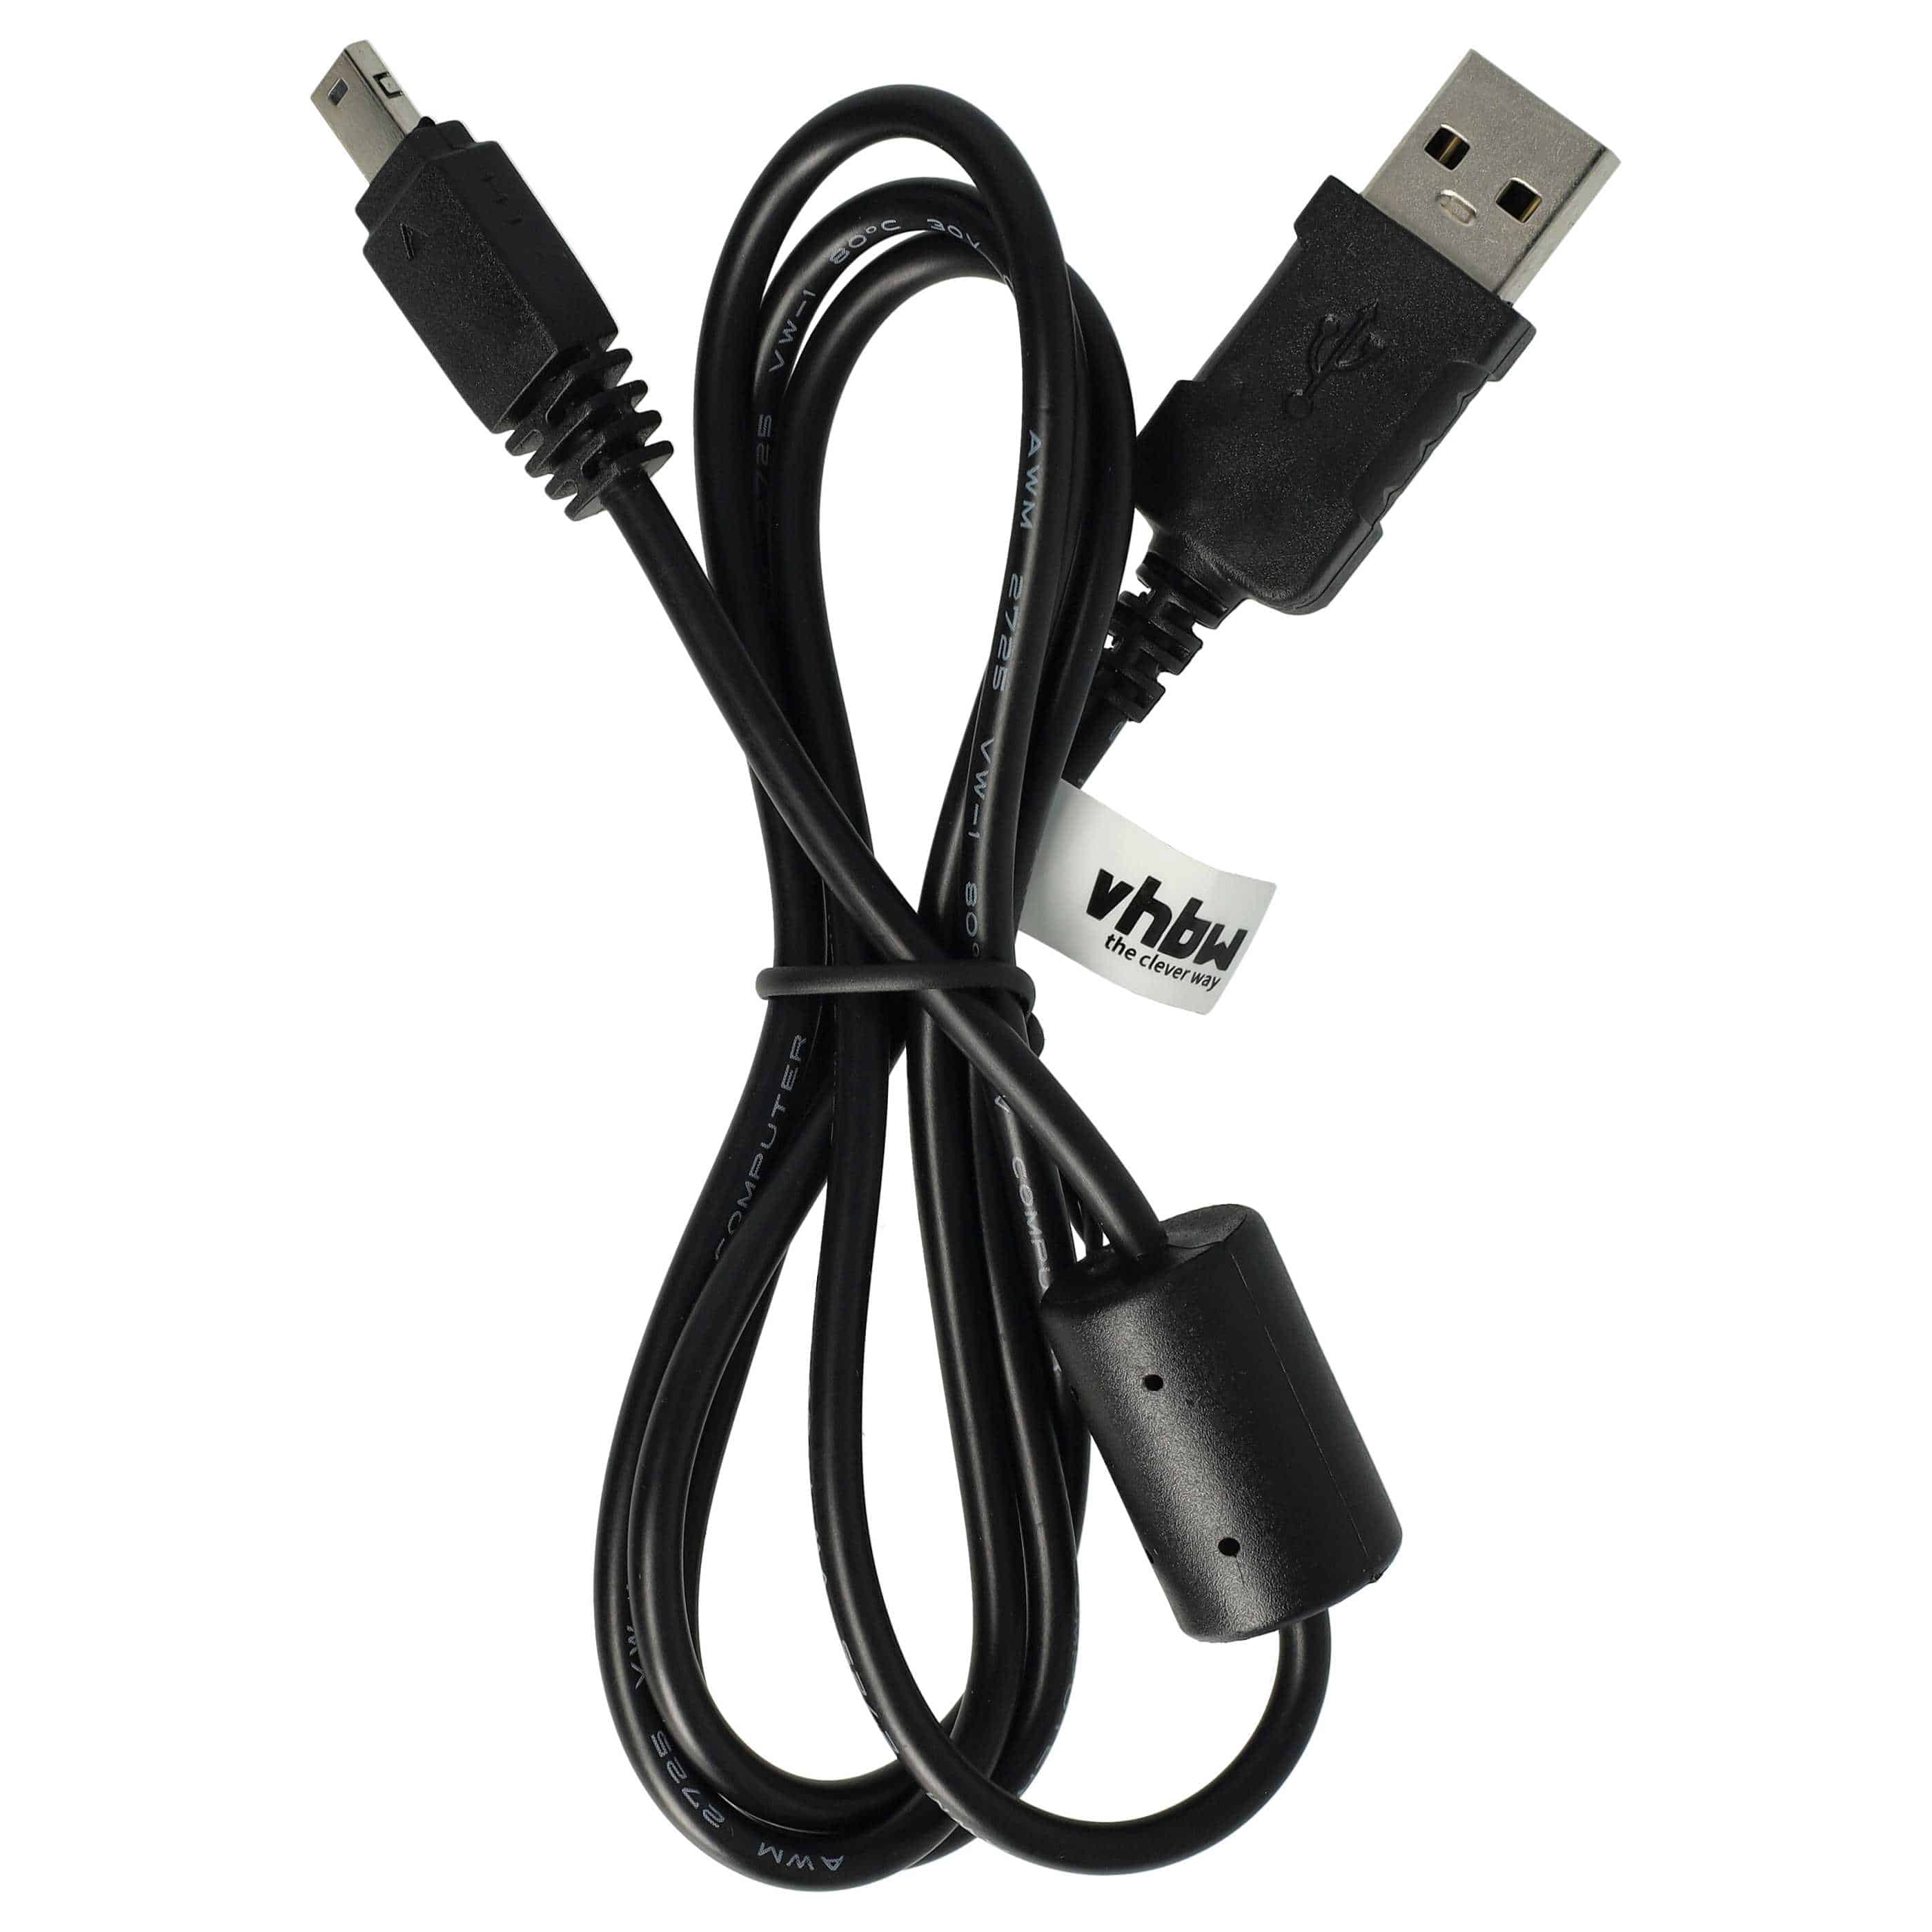 USB Datenkabel als Ersatz für Casio U-8, EMC-6U, EMC-6 für Kamera - 100 cm